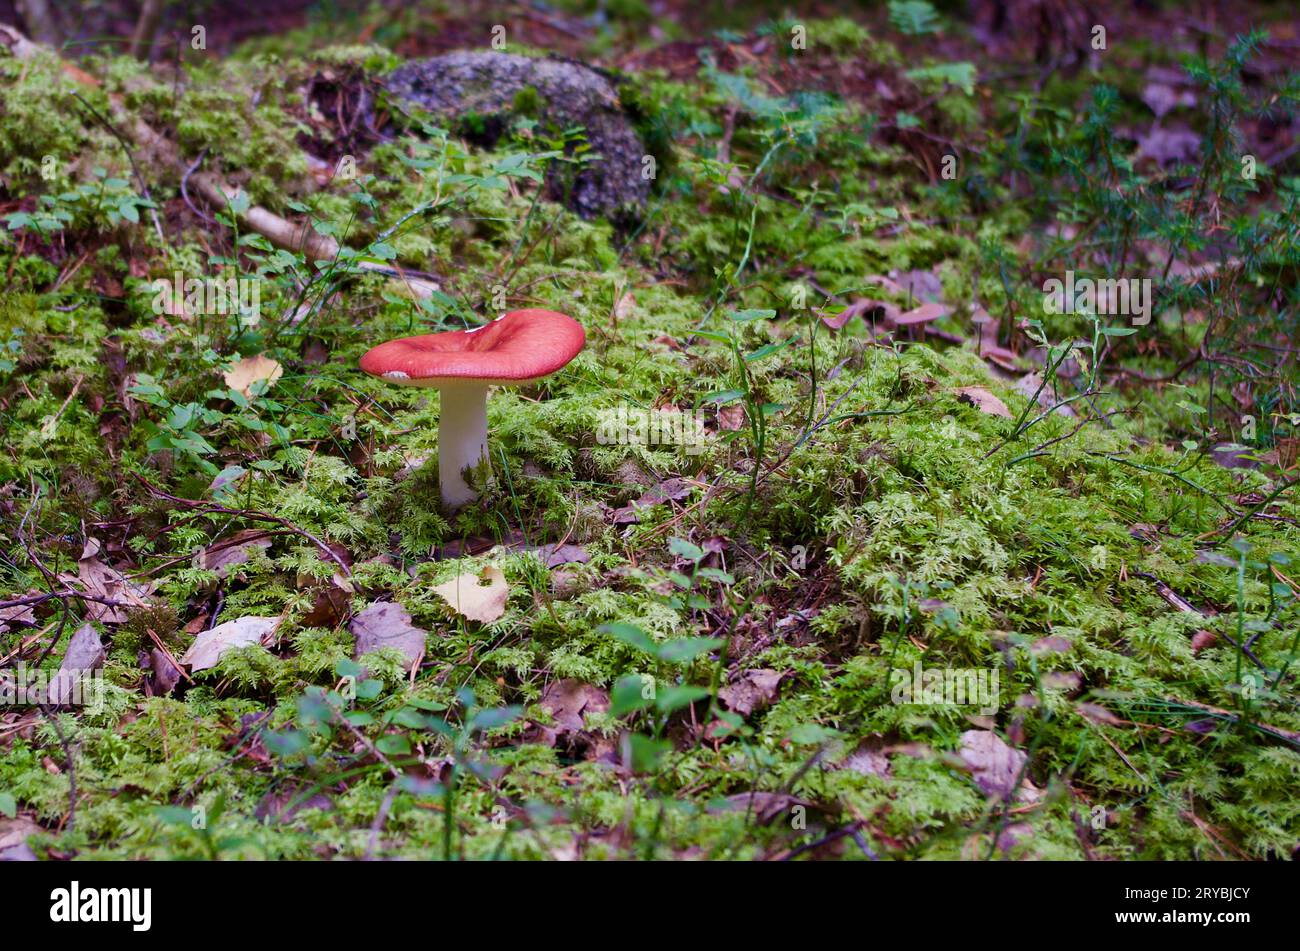 Russula-Pilz mit roter Kappe wächst im Herbst in grünem Moos mit Zweigen in einer Waldlandschaft. Stockfoto